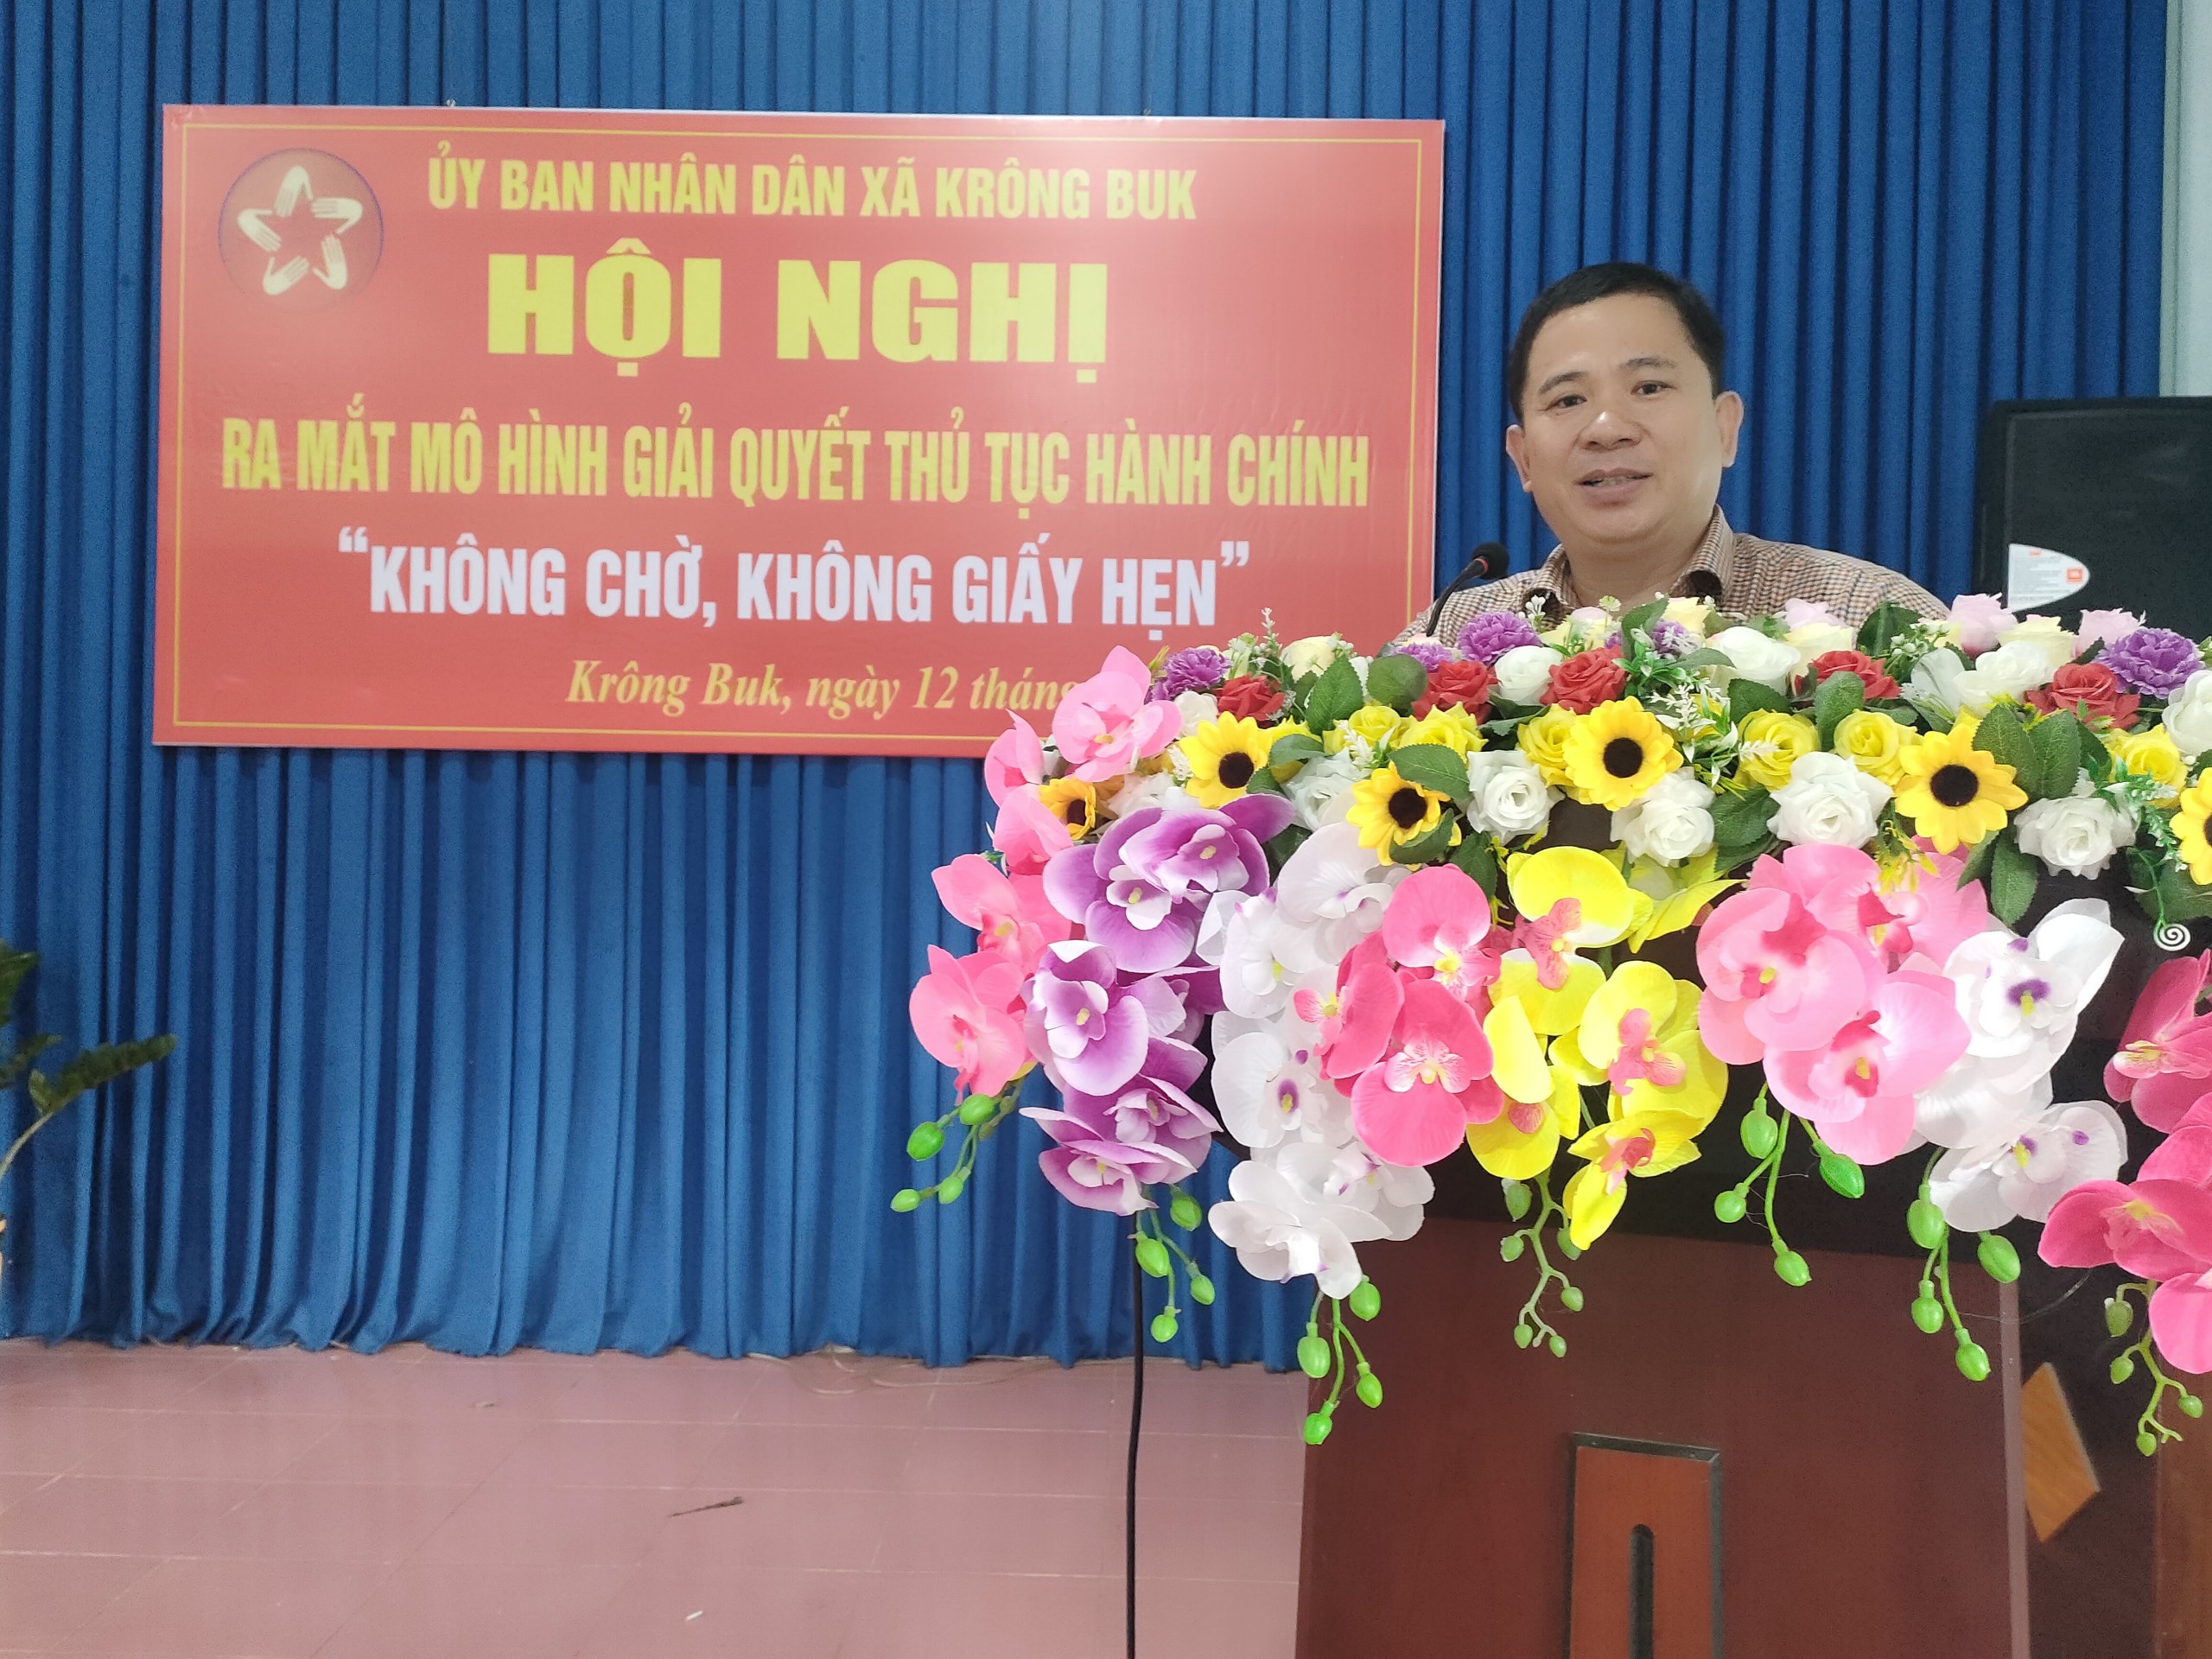 Ủy ban nhân dân xã Krông Buk ra mắt Mô hình "Không chờ, Không giấy hẹn"